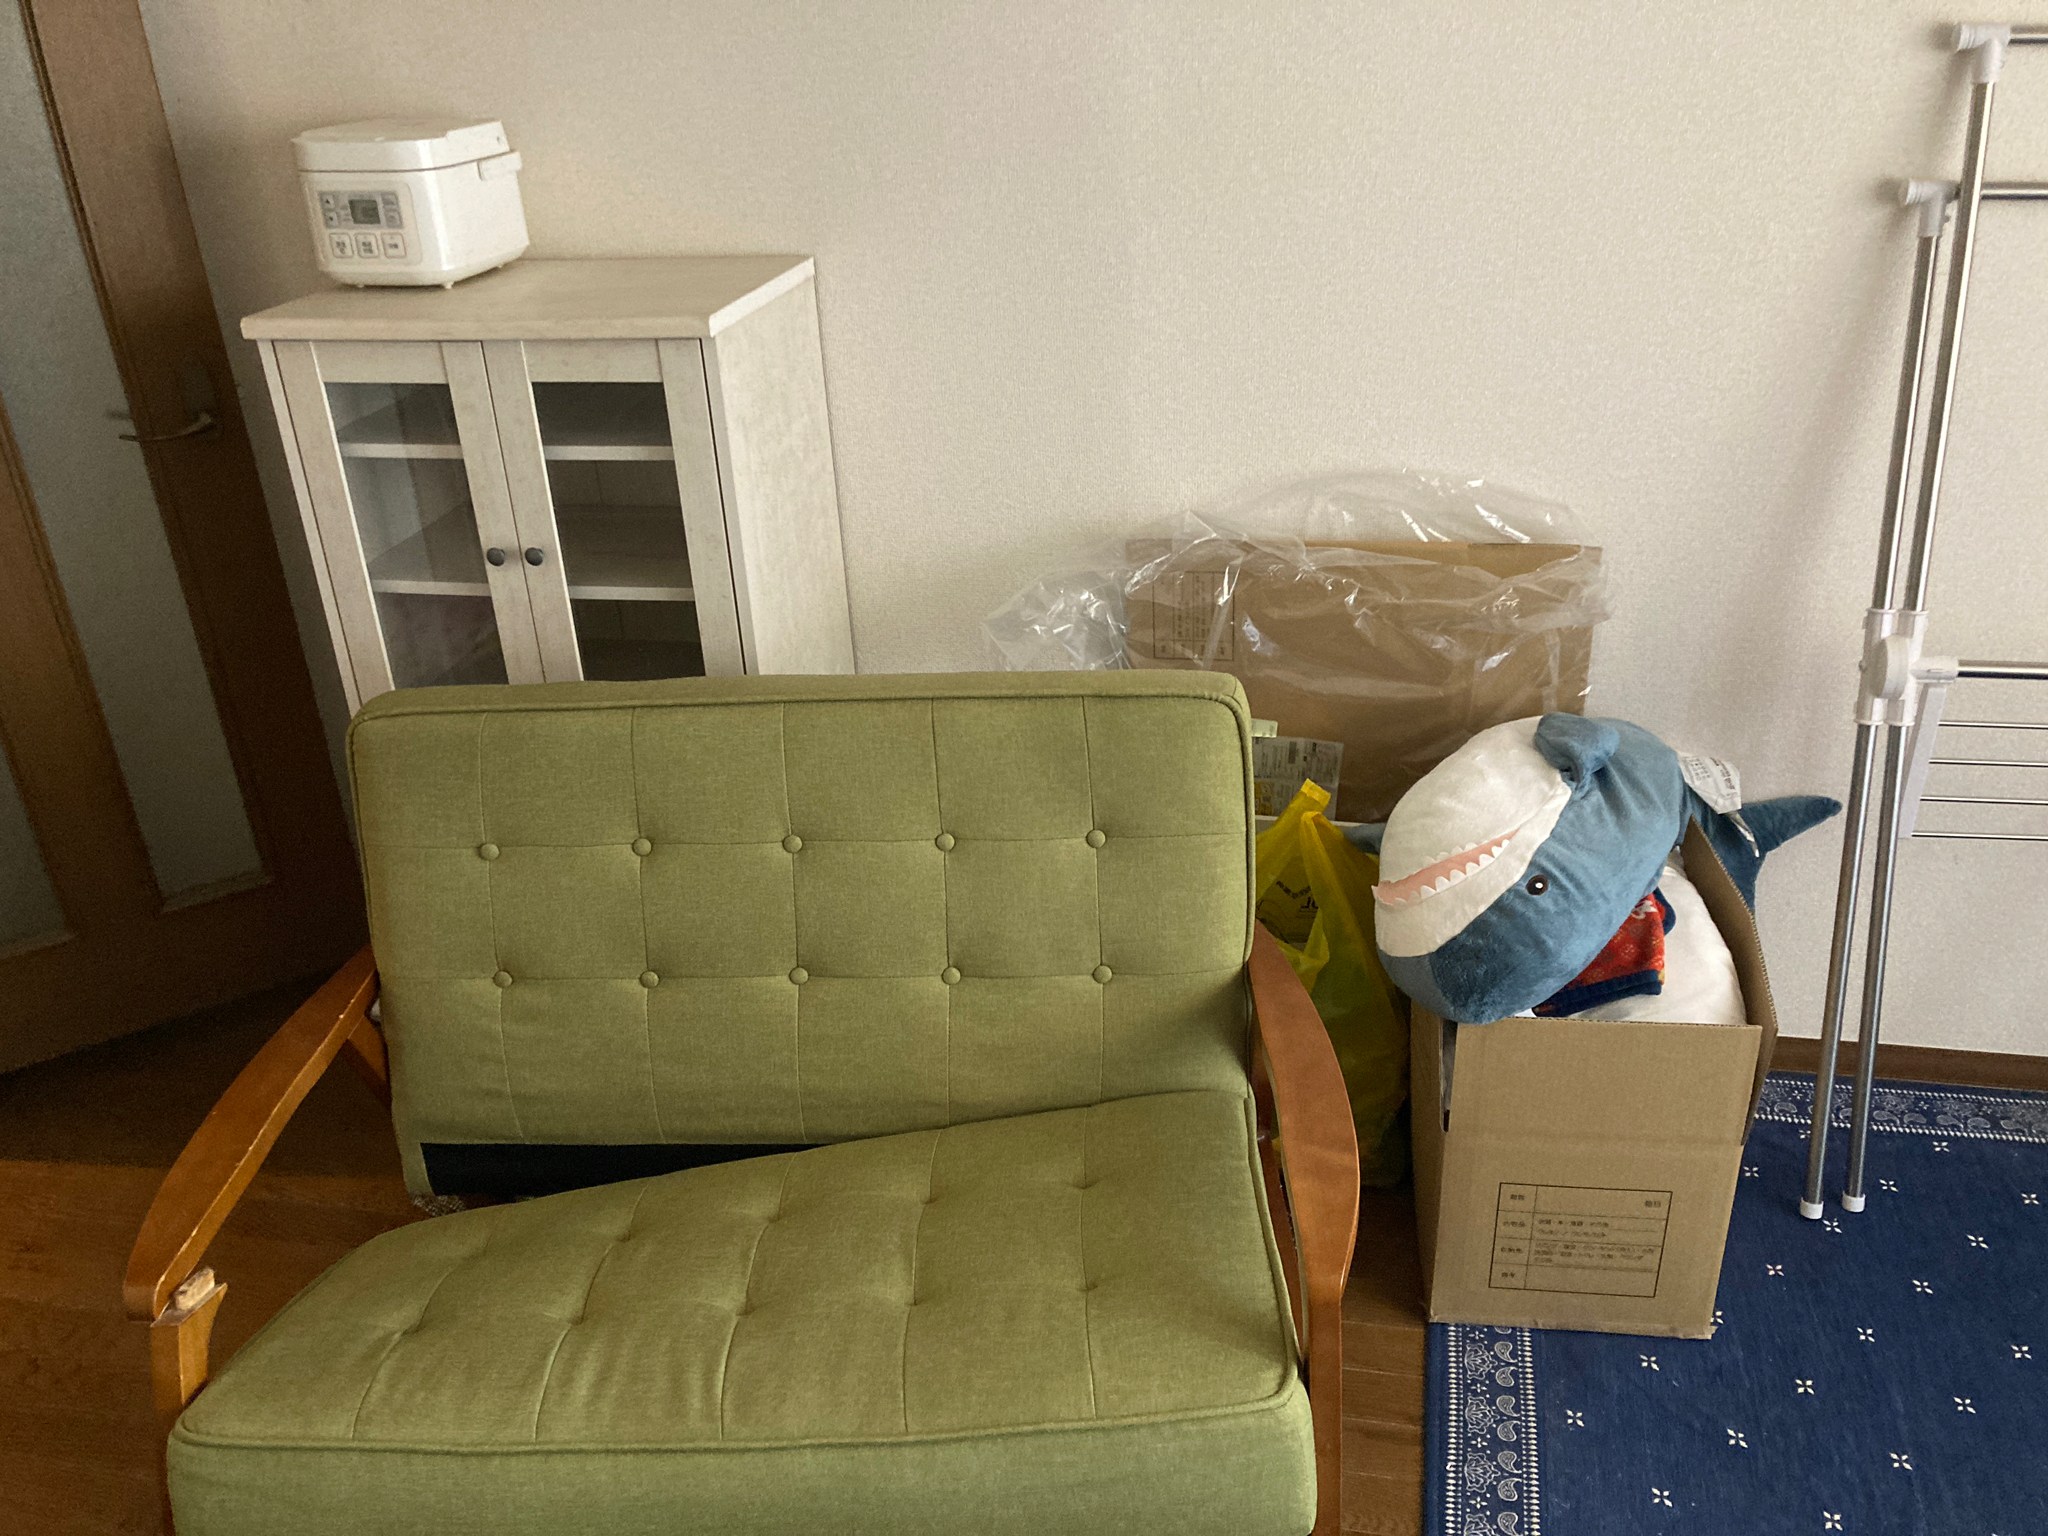 ソファー、棚、炊飯器、ぬいぐるみ、ラグ、物干しの回収前の状態